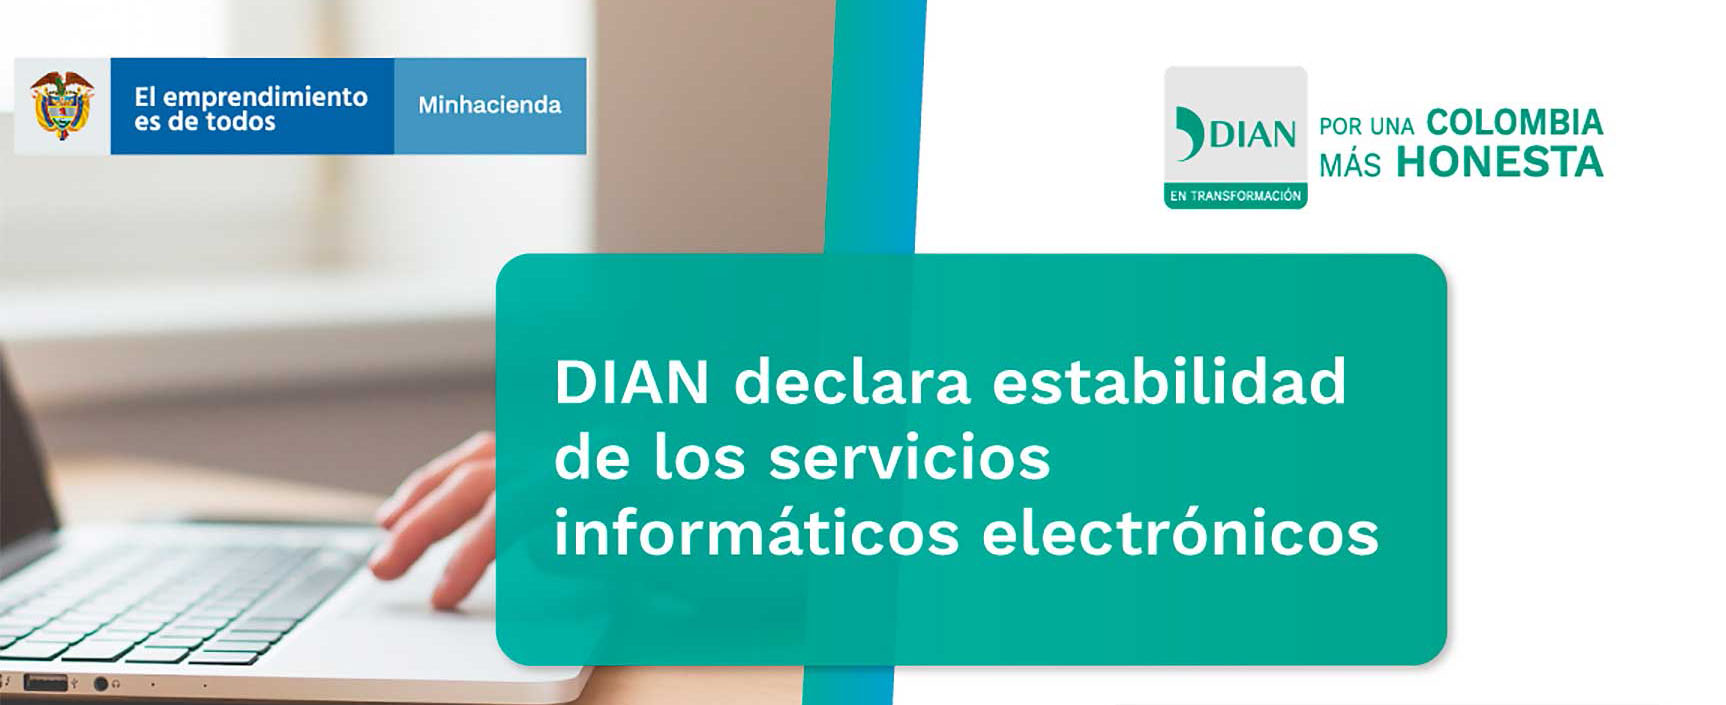 Dian declara estabilidad de los servicios informáticos electrónicos 2